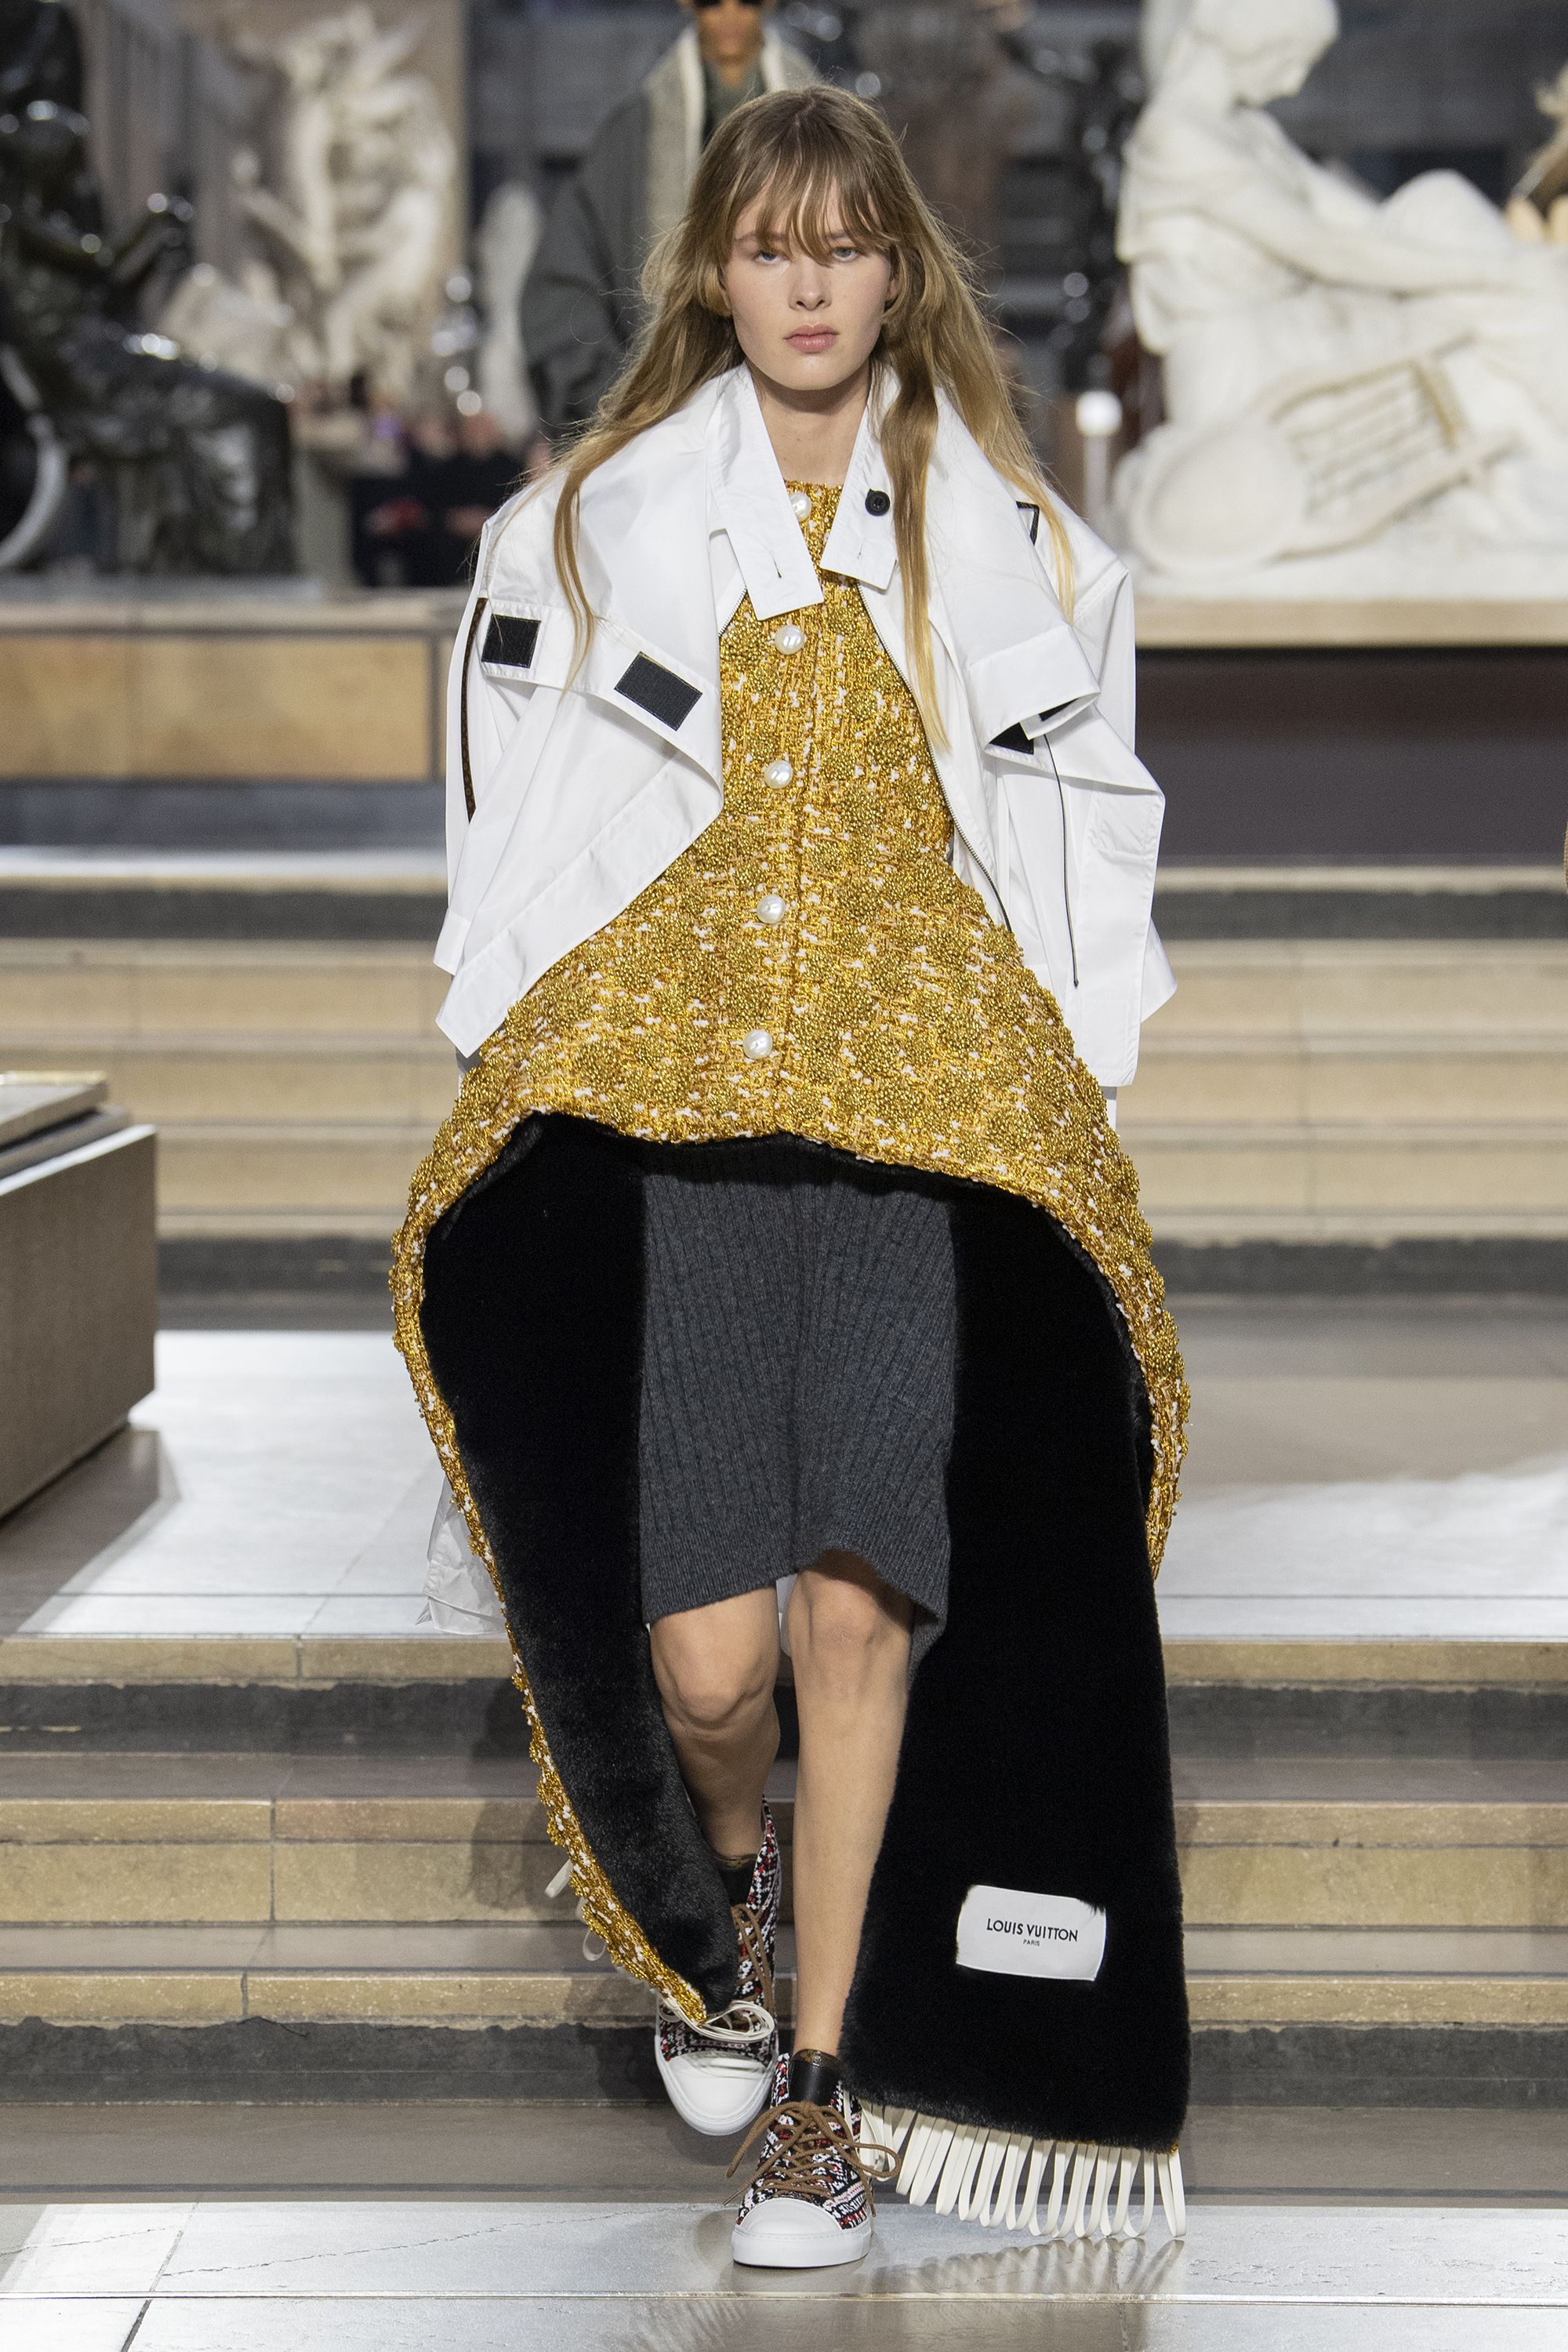 Paris Discount: How I Got Louis Vuitton for Less! – Classy clean chic